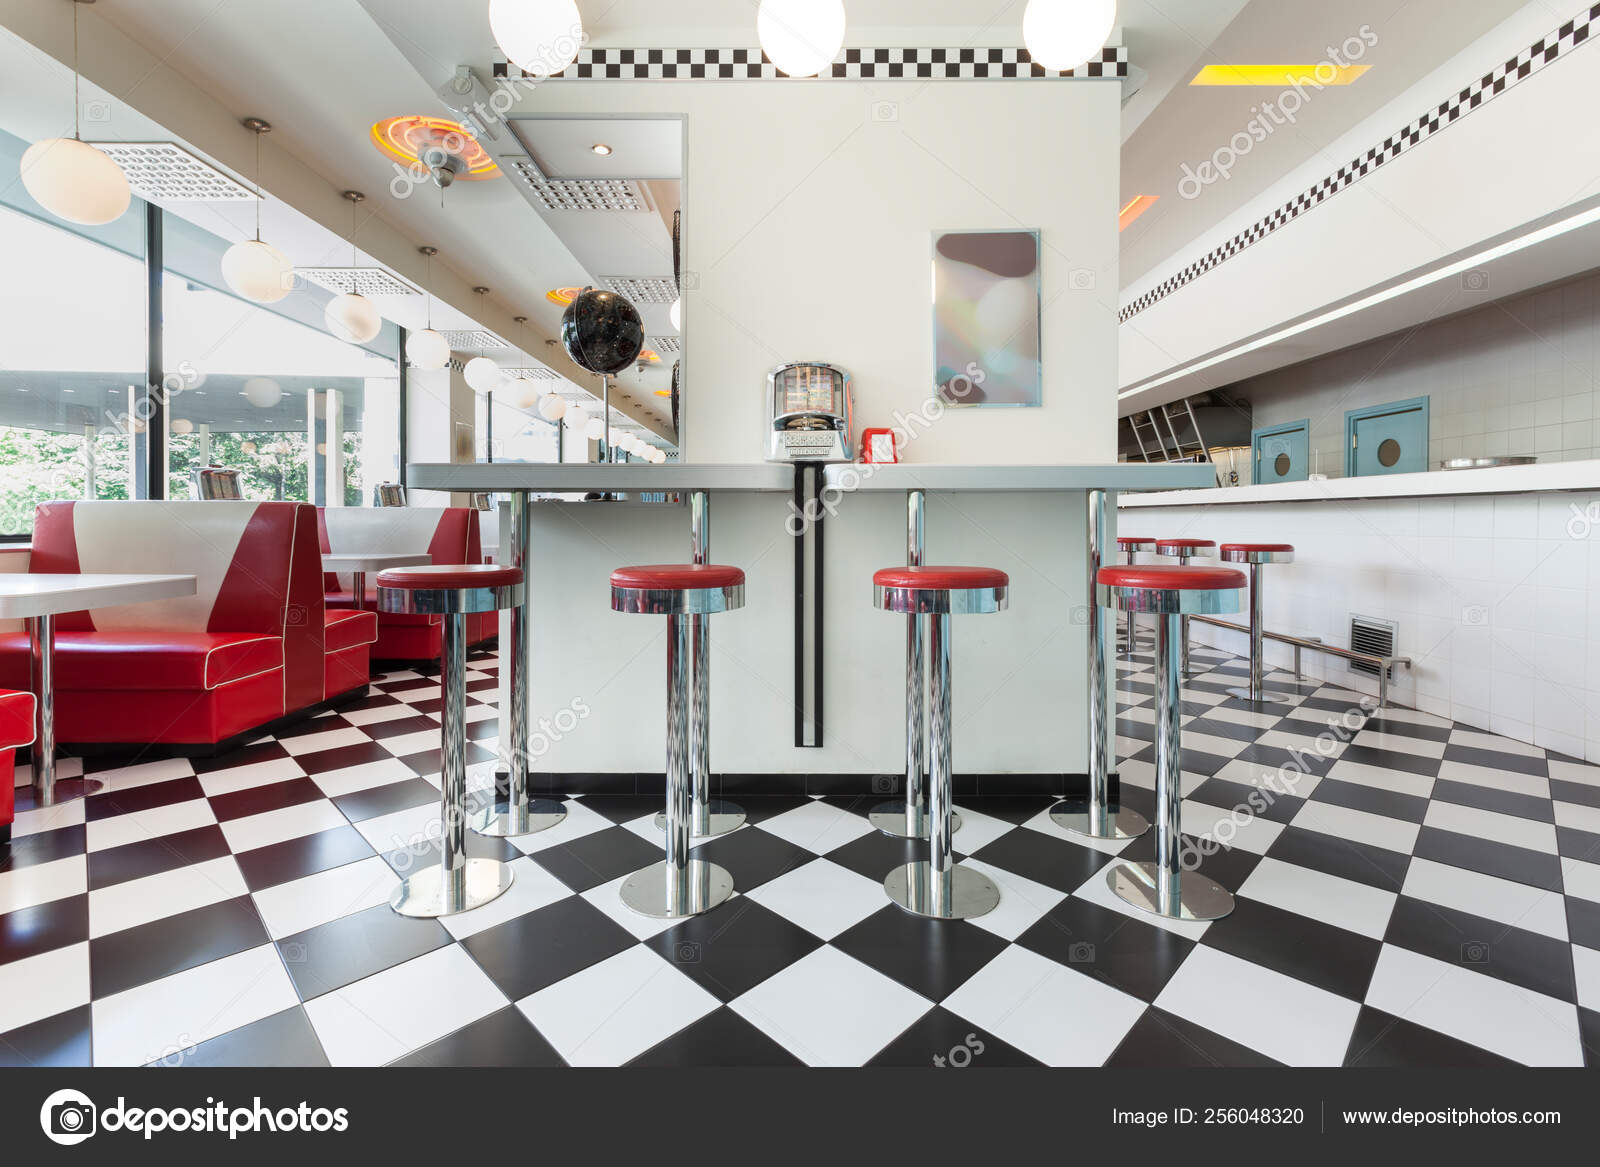 American Diner Restaurant Retro Interior Stock Photo by ©arizanko 256048320